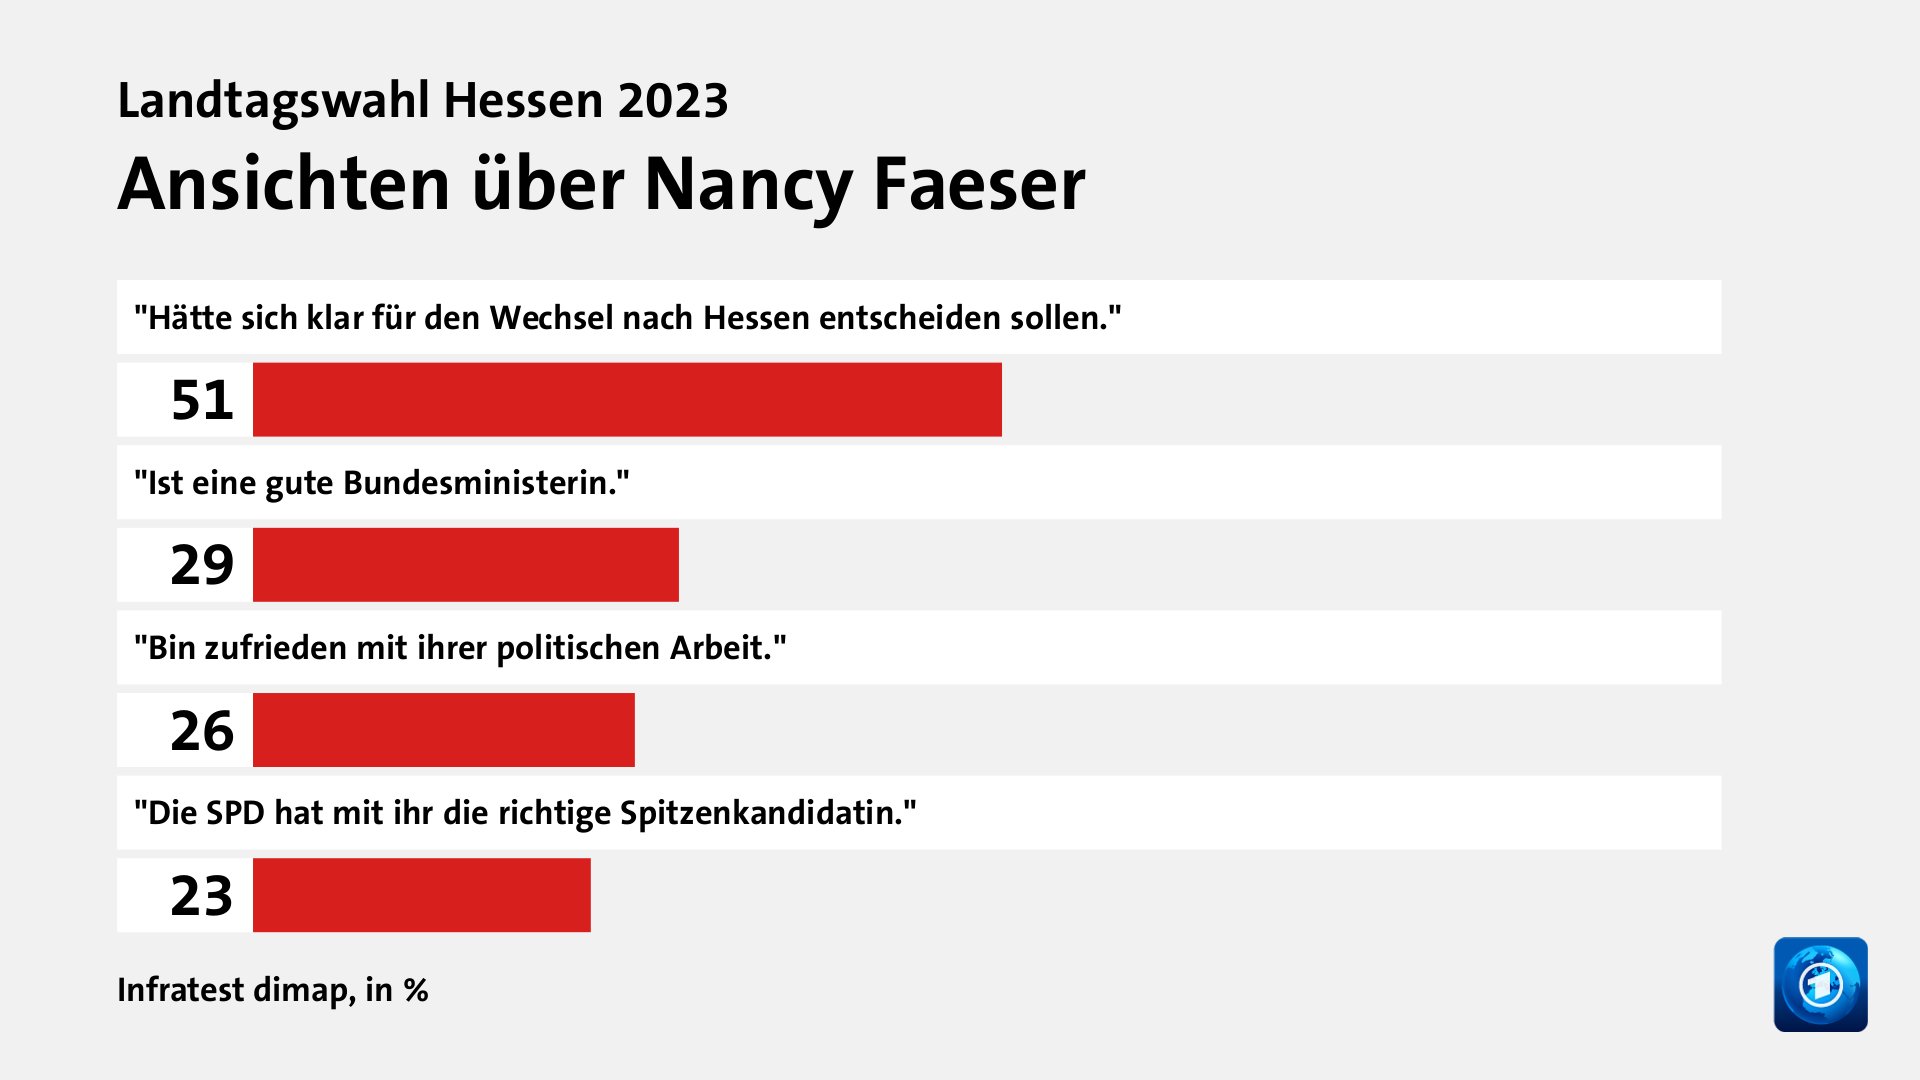 Ansichten über Nancy Faeser, in %: 